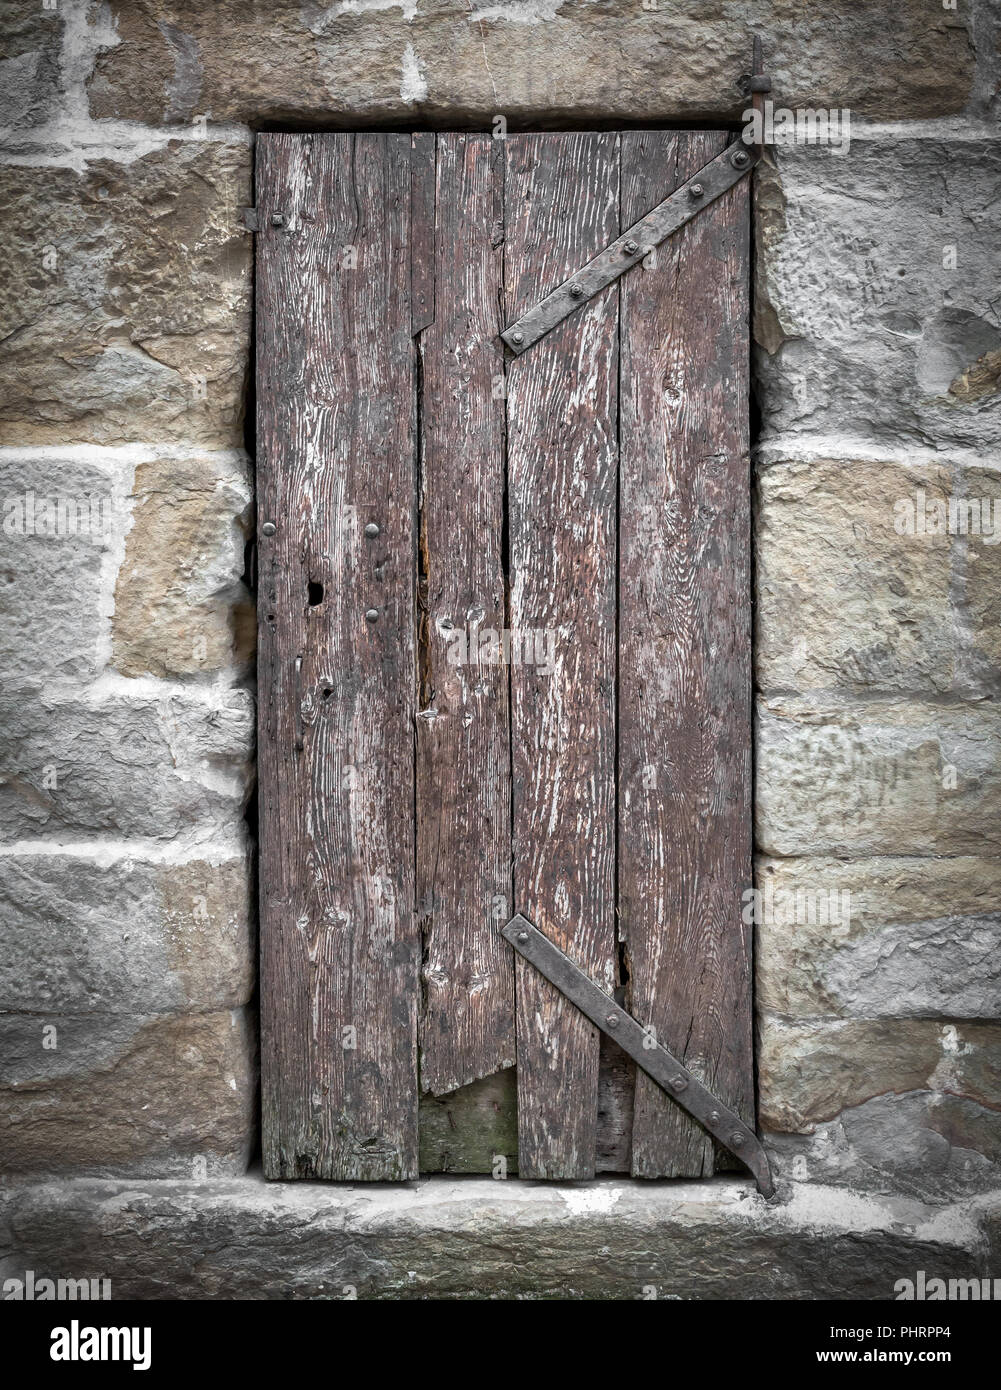 Old wooden hinged door Stock Photo - Alamy